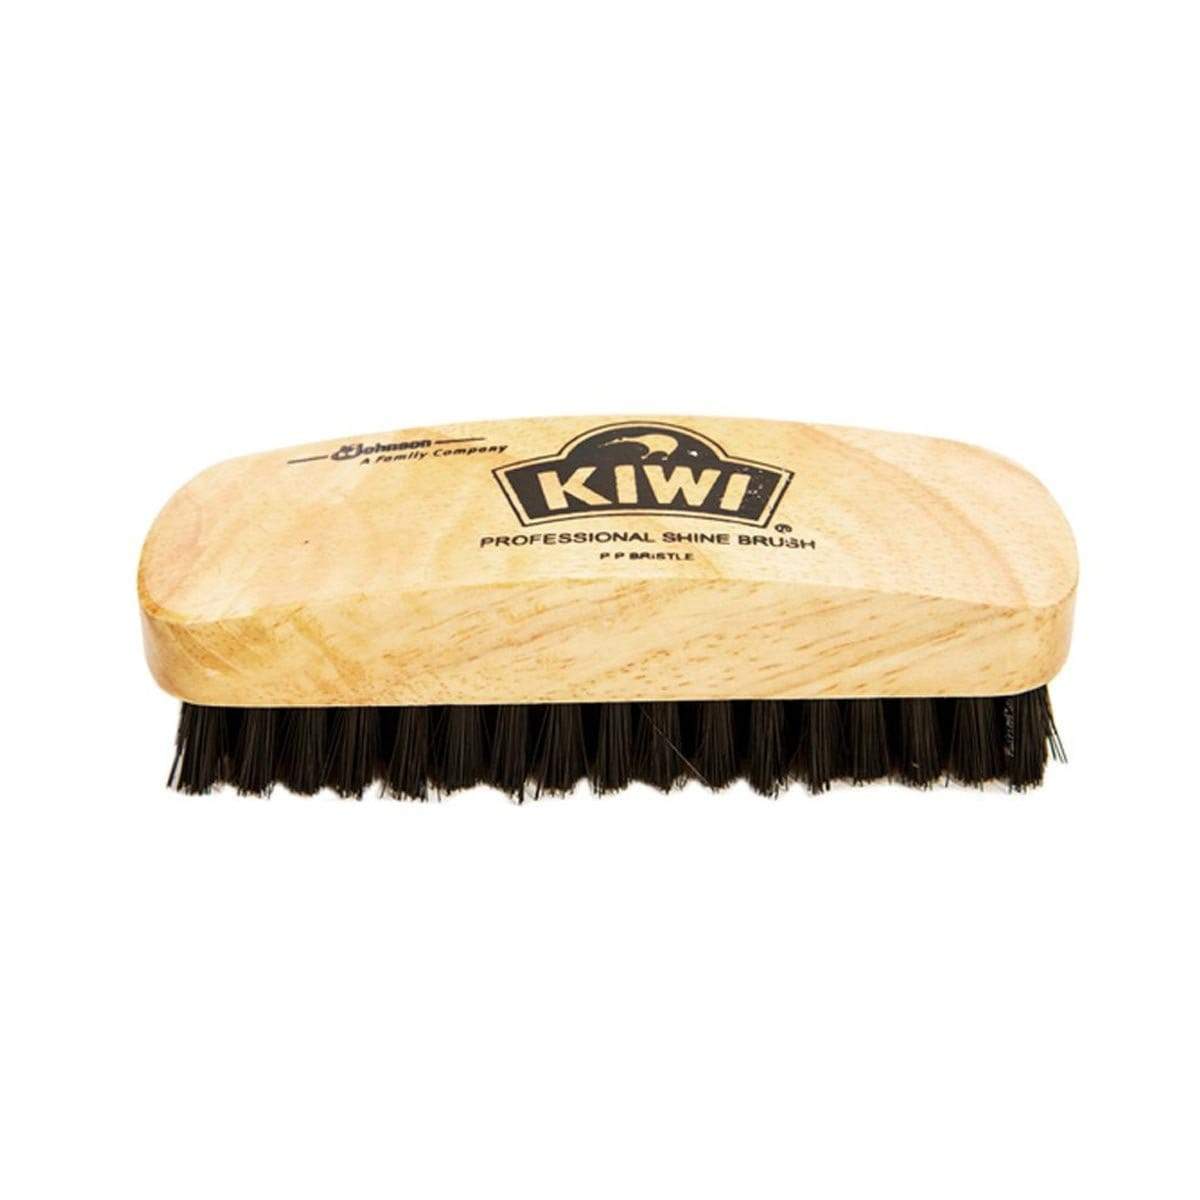 KIWI Pro Shine Brush 646318